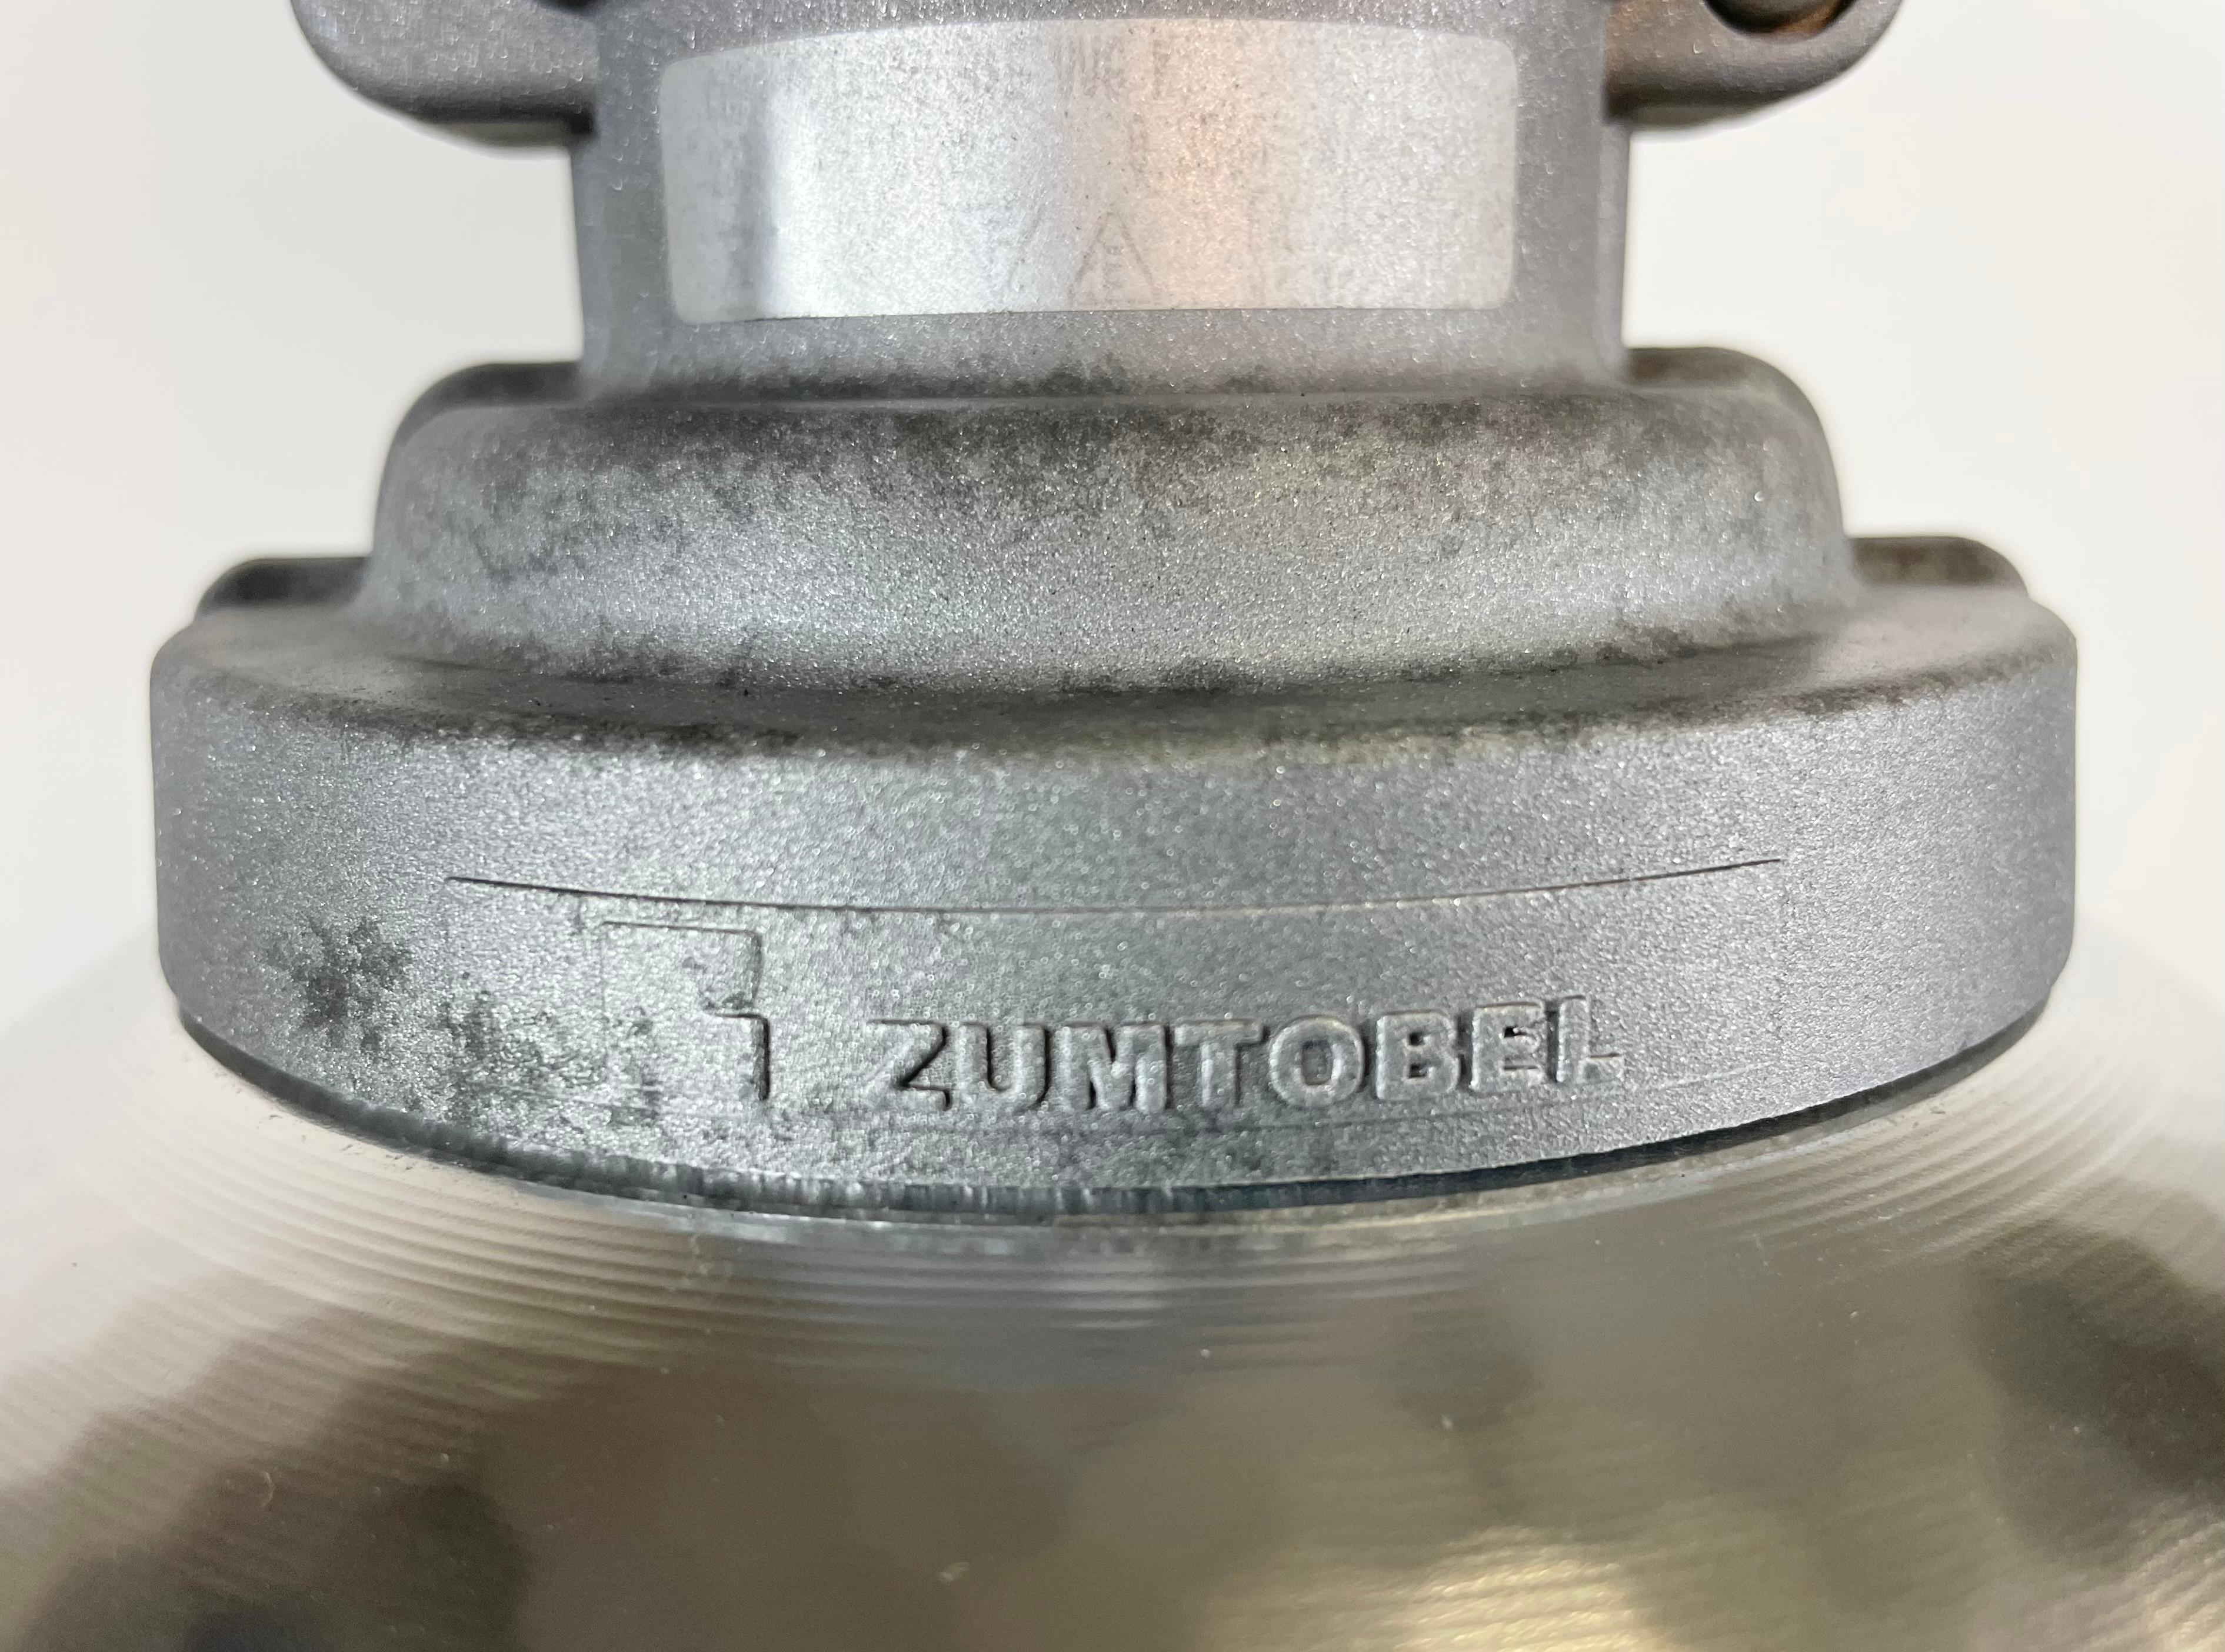 Aluminum Industrial Pendant Lamp by Charles Keller for Zumtobel, 1990s For Sale